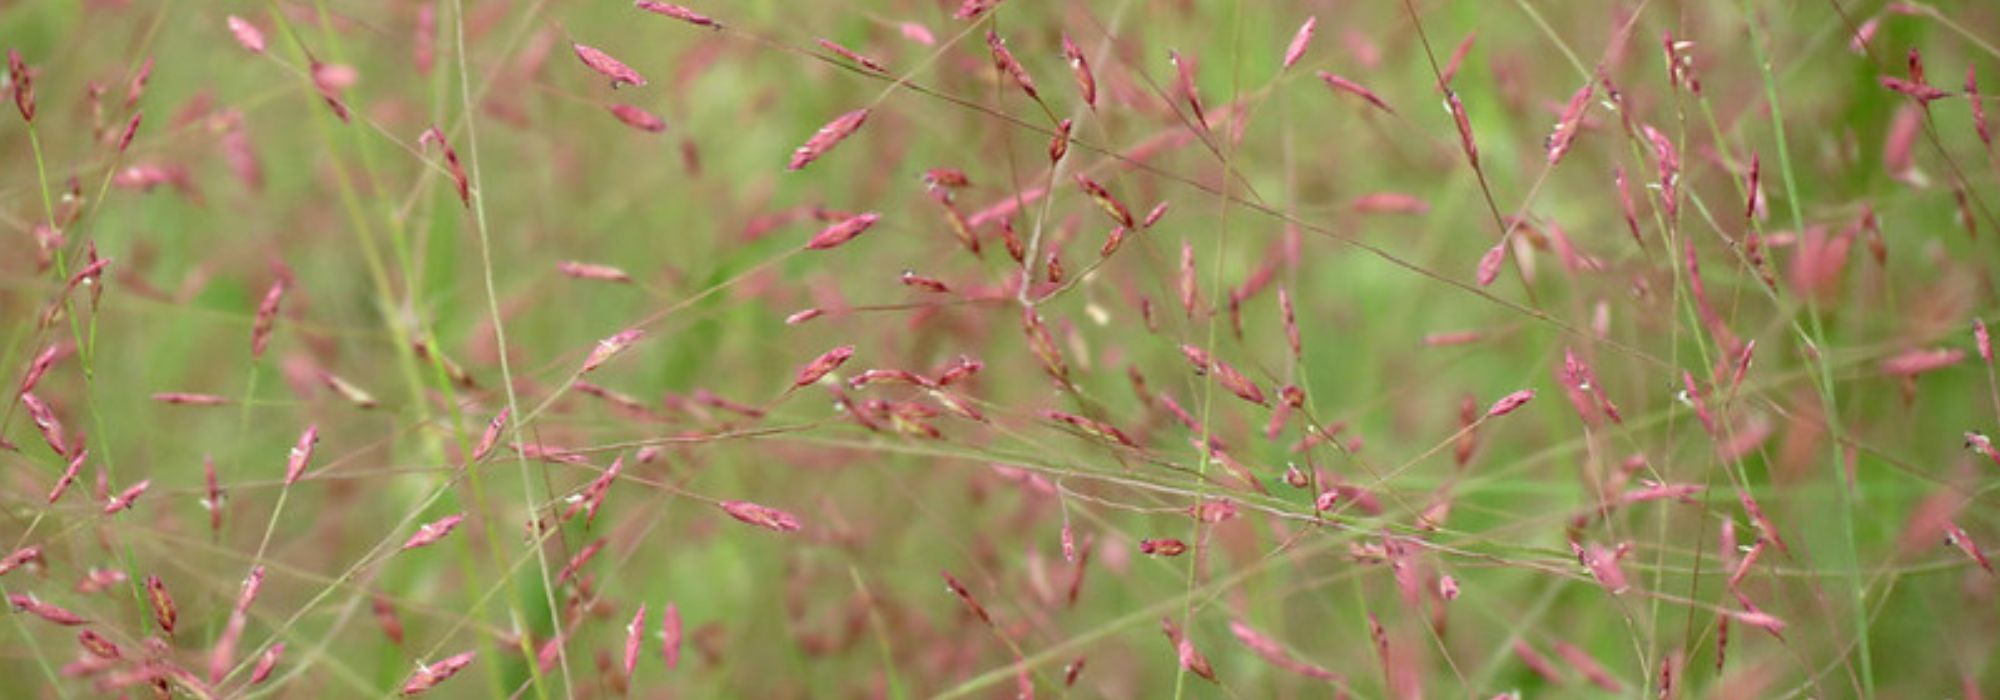 Eragrostis - Herbe d'amour : planter, cultiver et entretenir